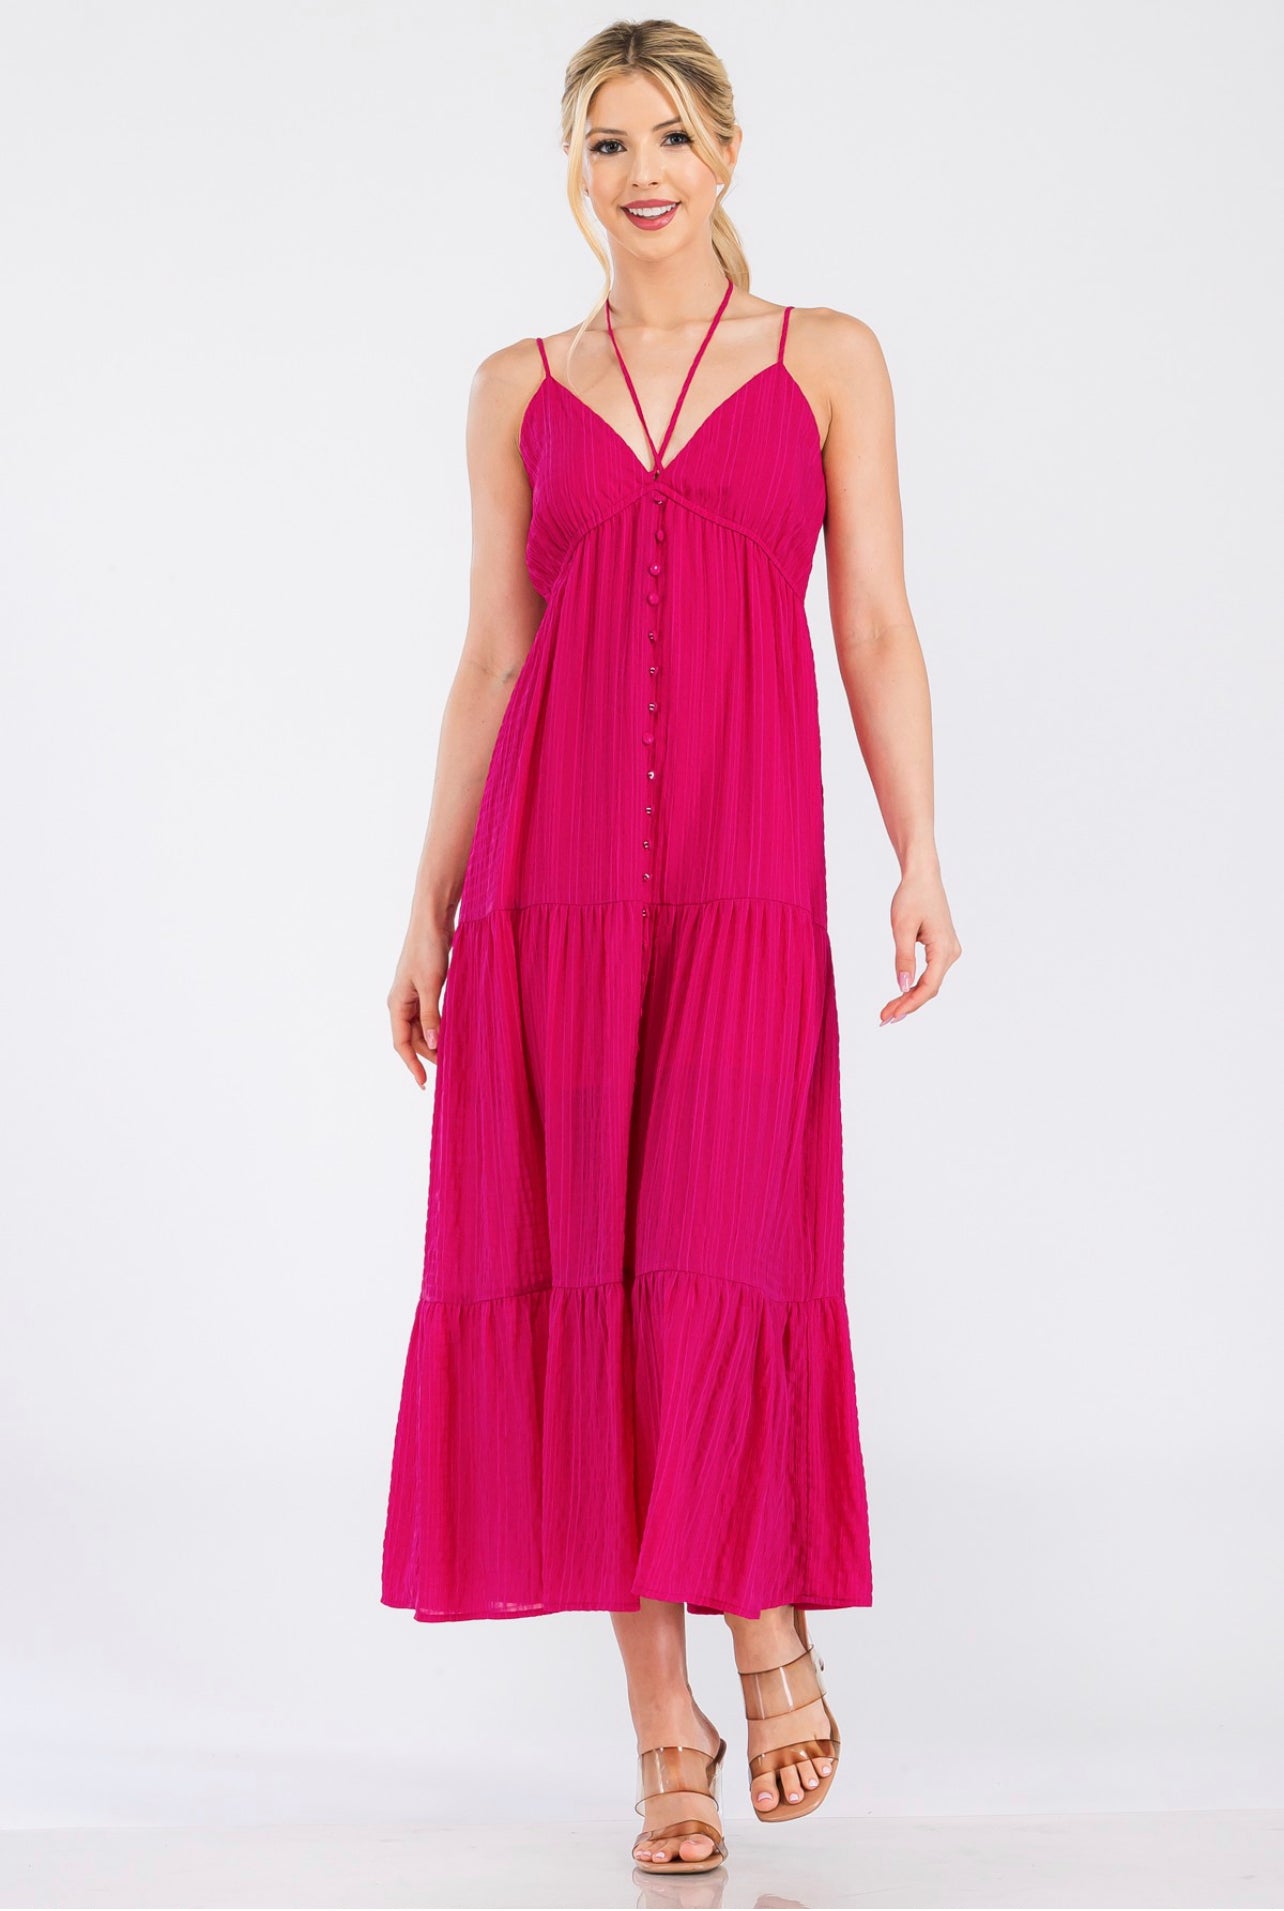 “Pretty Pink” Midi Dress